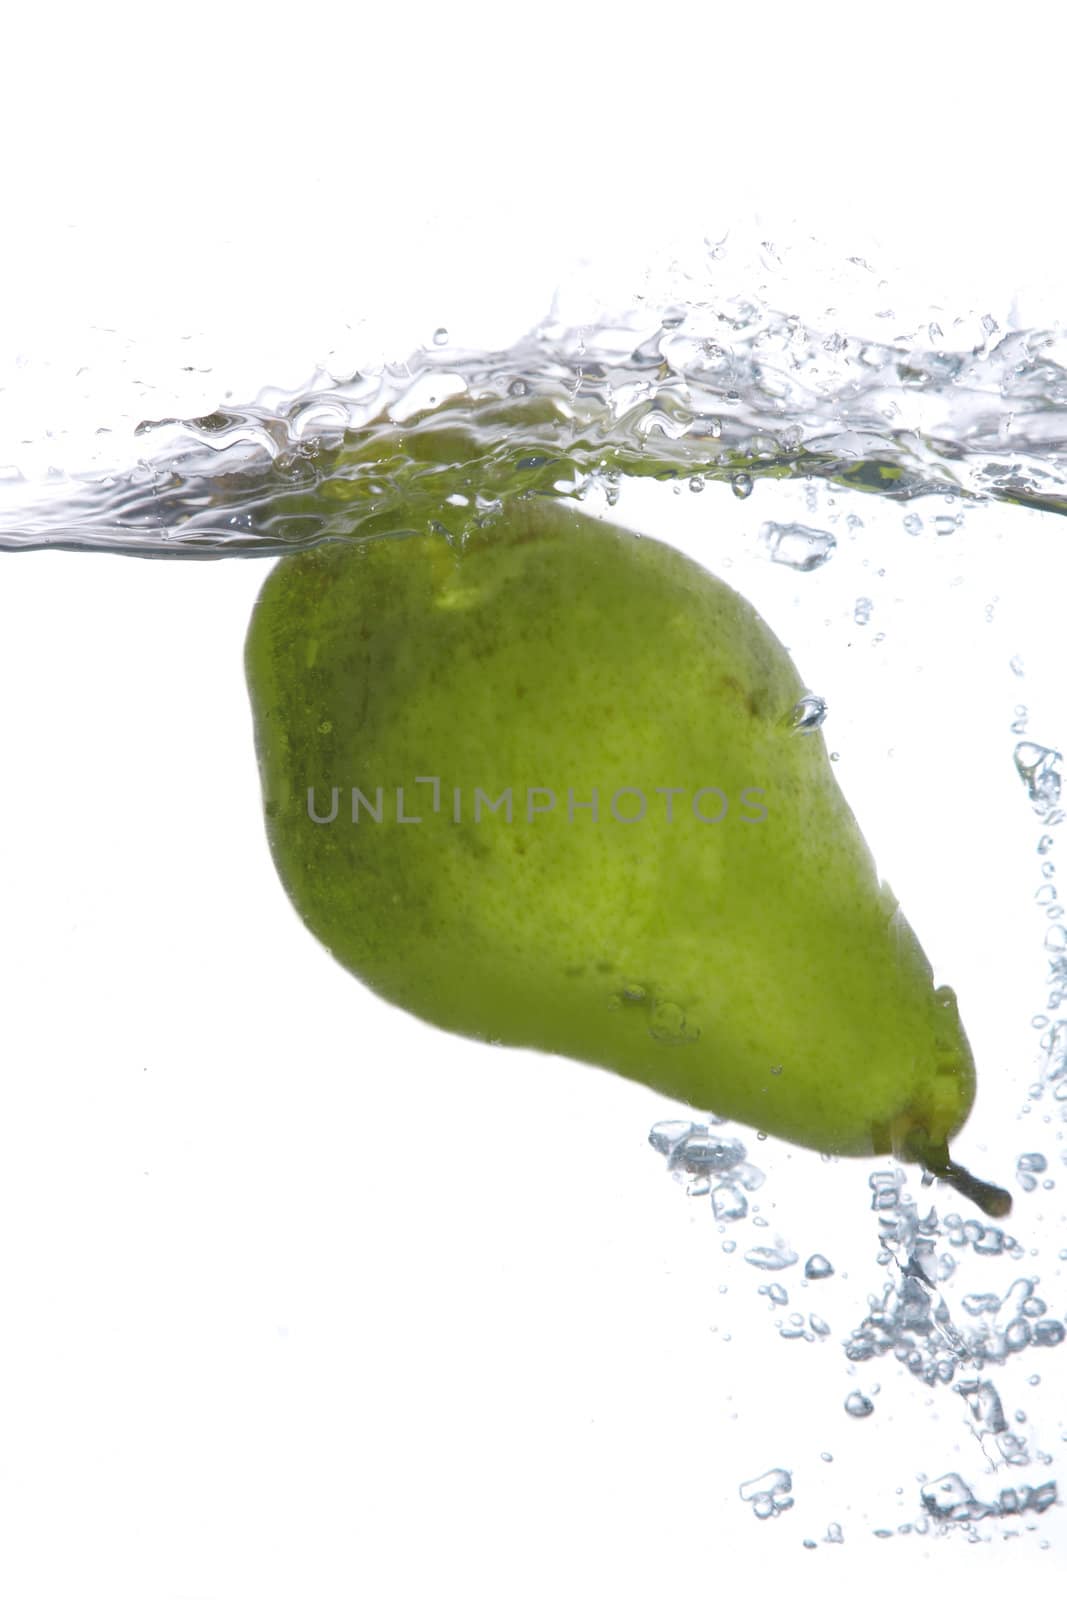 Green pear falling in water